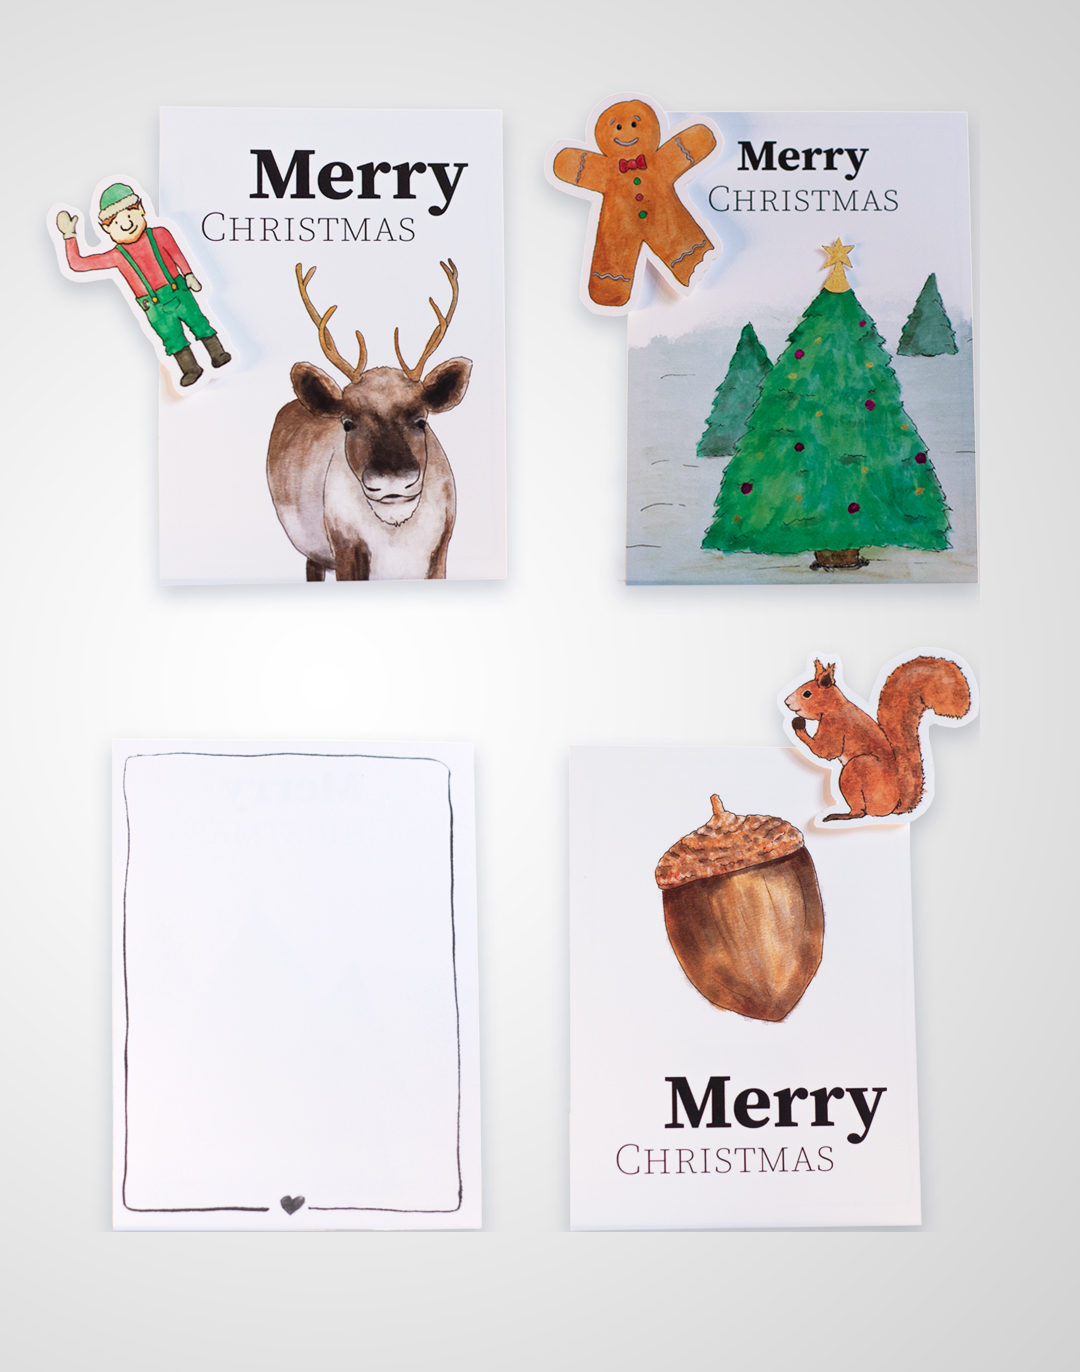 Overzicht van 3 kerstkaarten met Eland en elfje, Kerstboom en gingerbread mannetje, een eikel met een eekhoorntje en de achterkant met getekent randje en een hartje